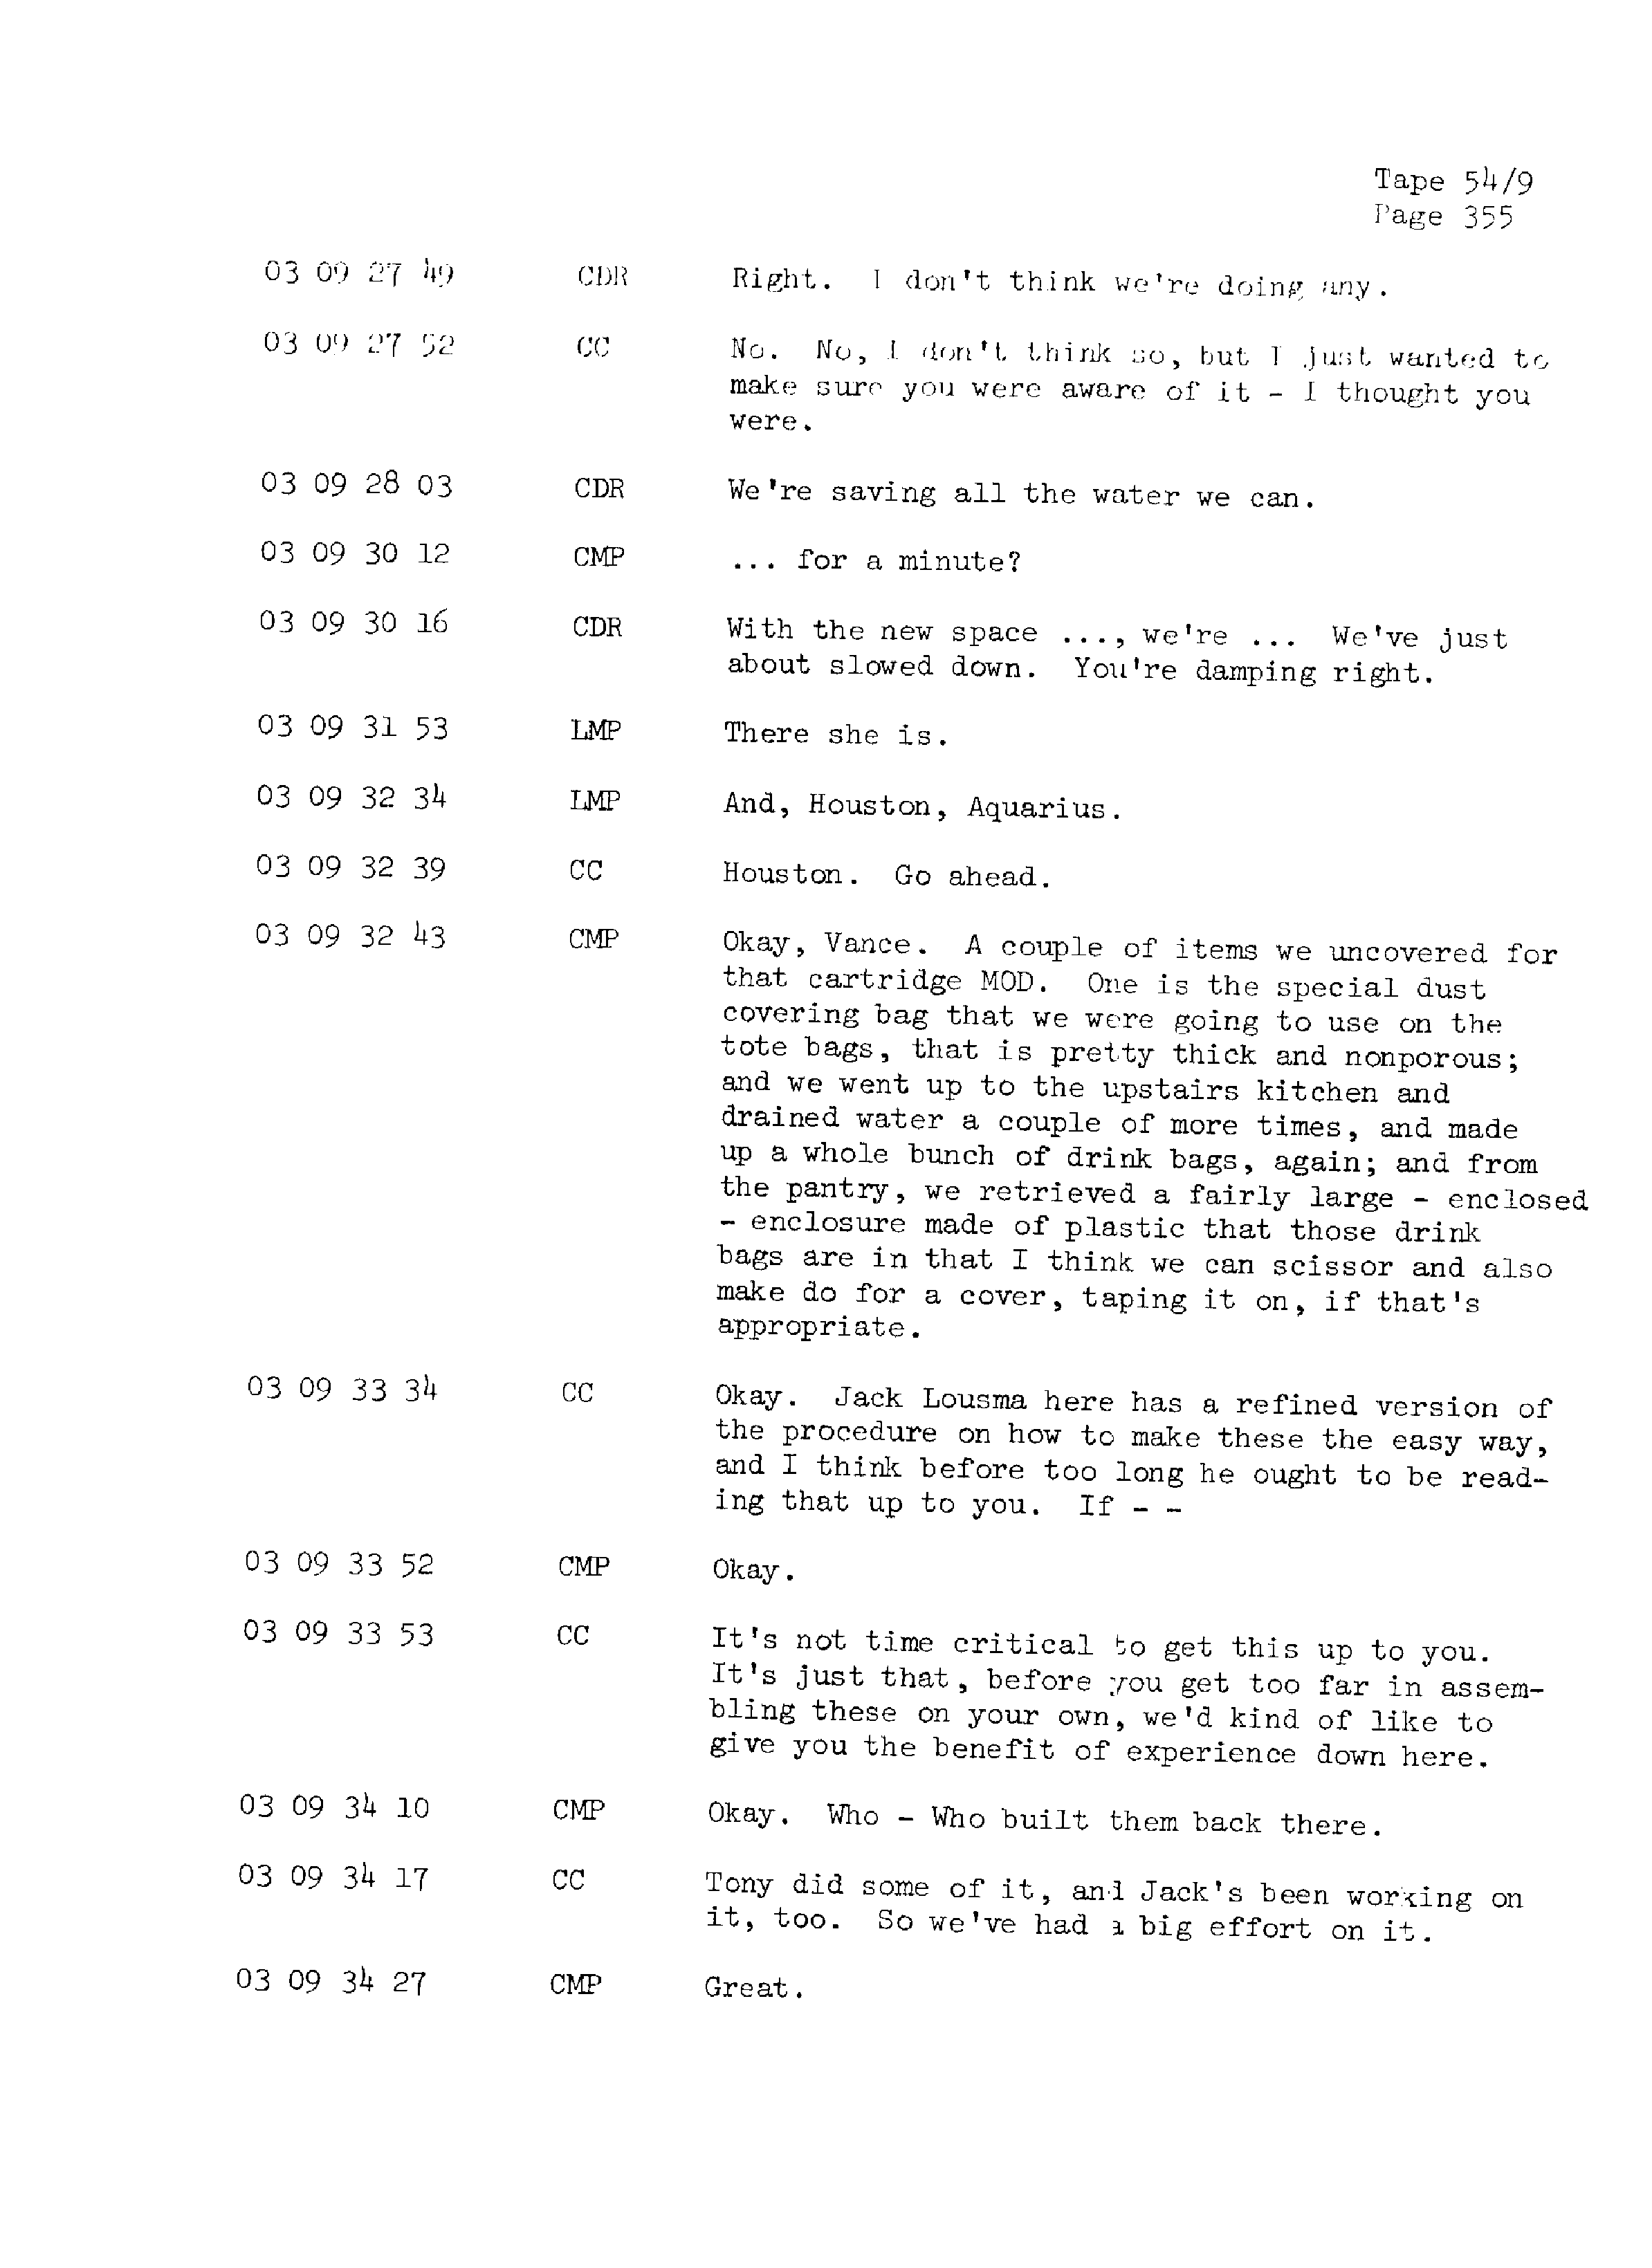 Page 362 of Apollo 13’s original transcript